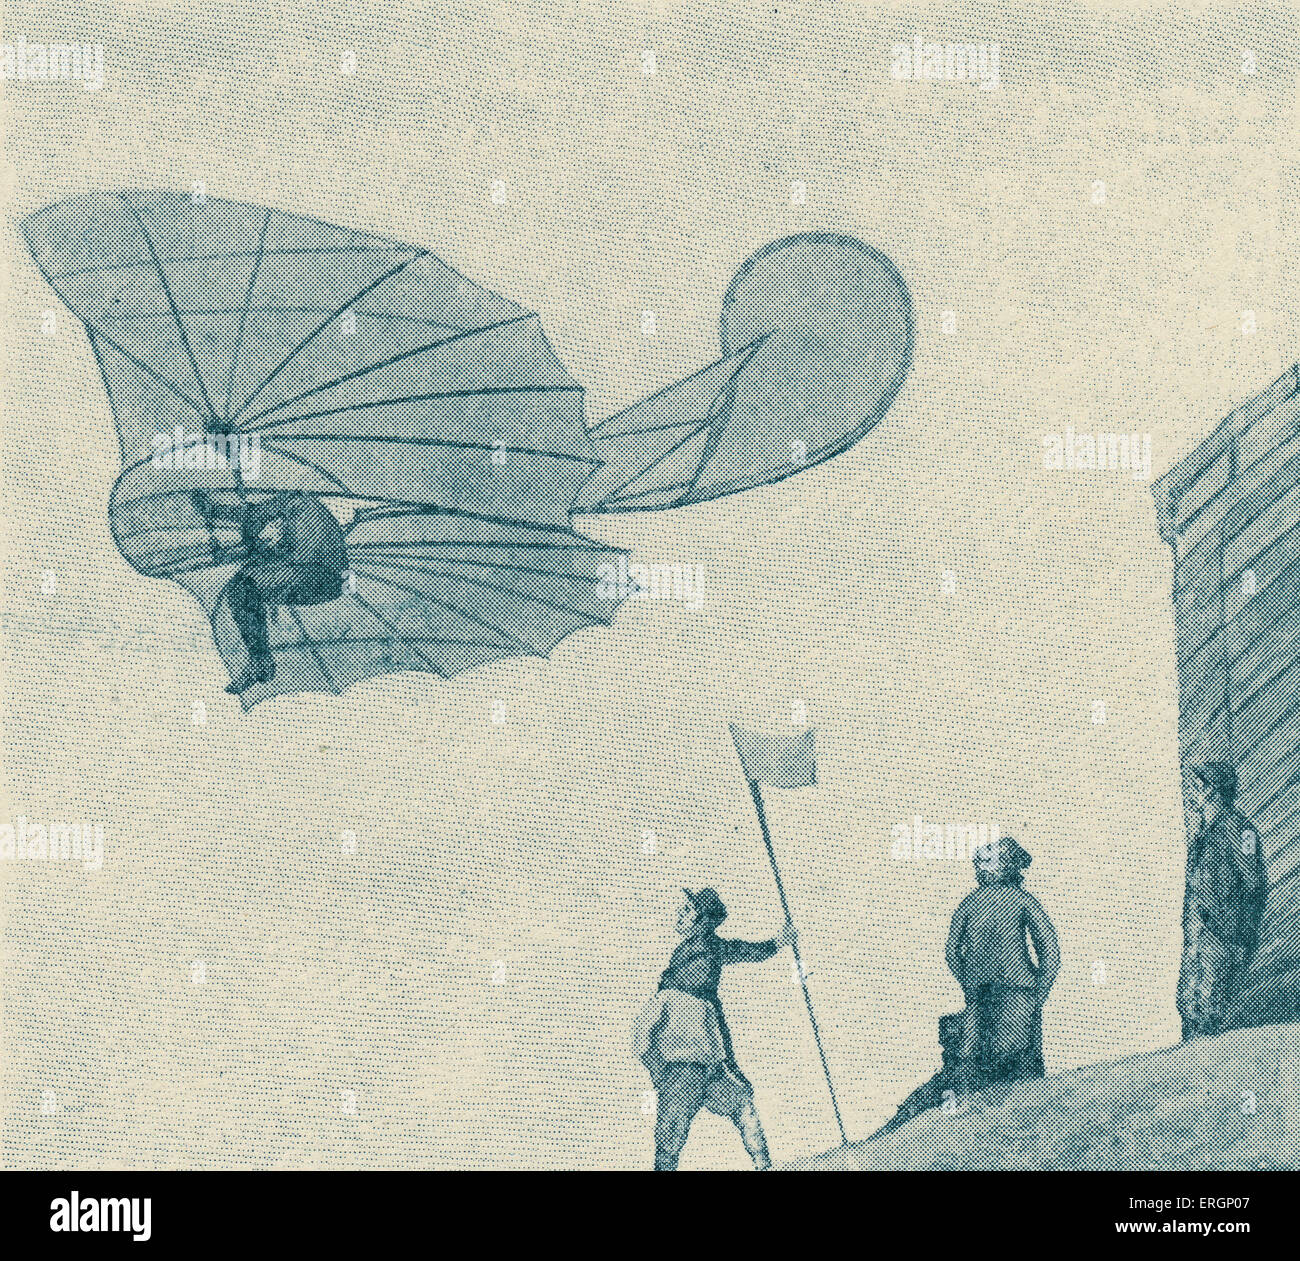 Otto Lilienthal auch bekannt als der "Glider-König" mit Flugmaschine. Lilienthal war die erste Person, die wiederholte erfolgreiche gleiten Flüge machen. OL: Deutscher Luftfahrtpionier 23. Mai 1848 – 10. August 1896. Stockfoto